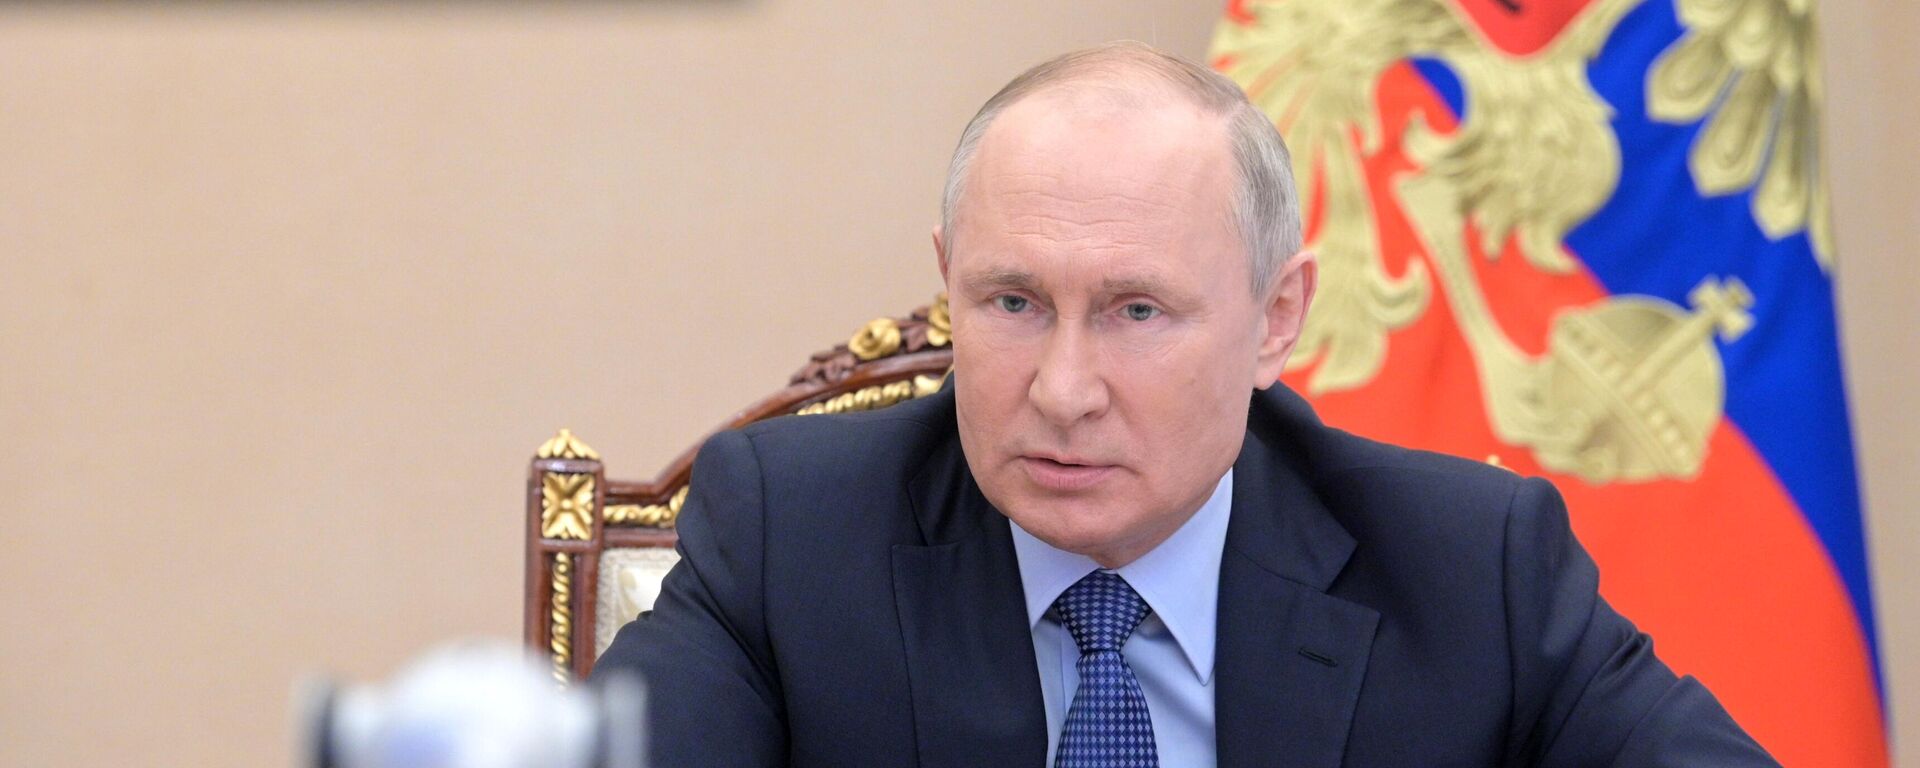 Vladímir Putin, presidente ruso - Sputnik Mundo, 1920, 17.06.2021